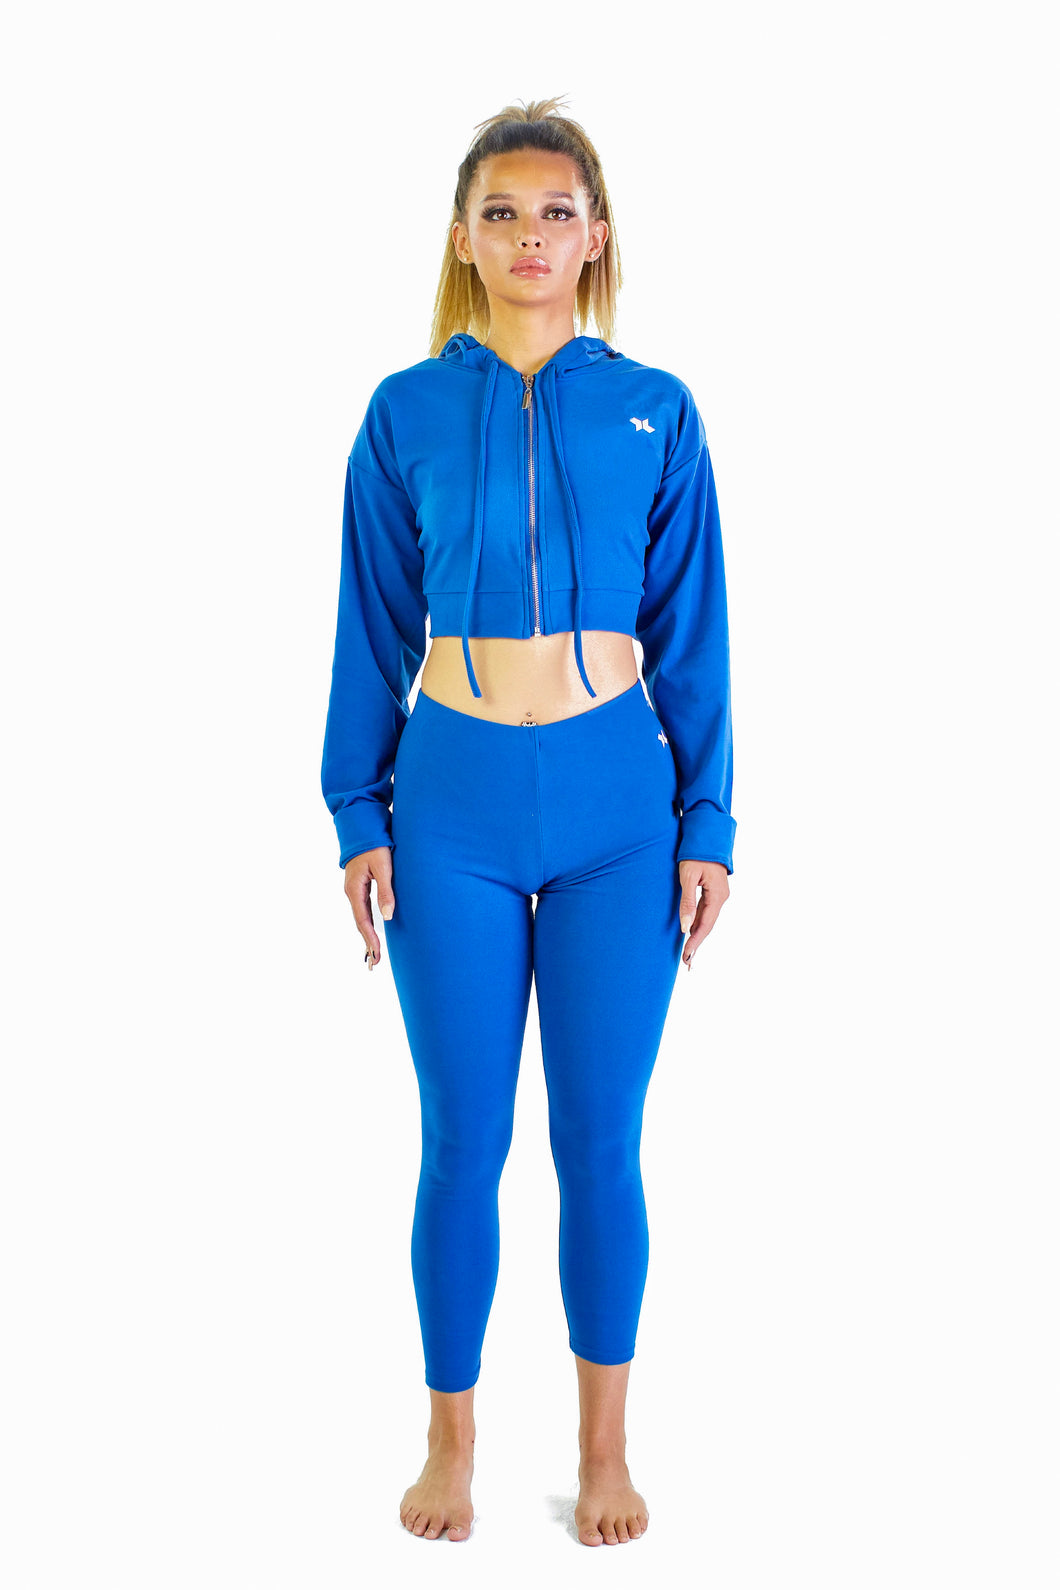 MissFit Activewear Hoodie Sweat Suit